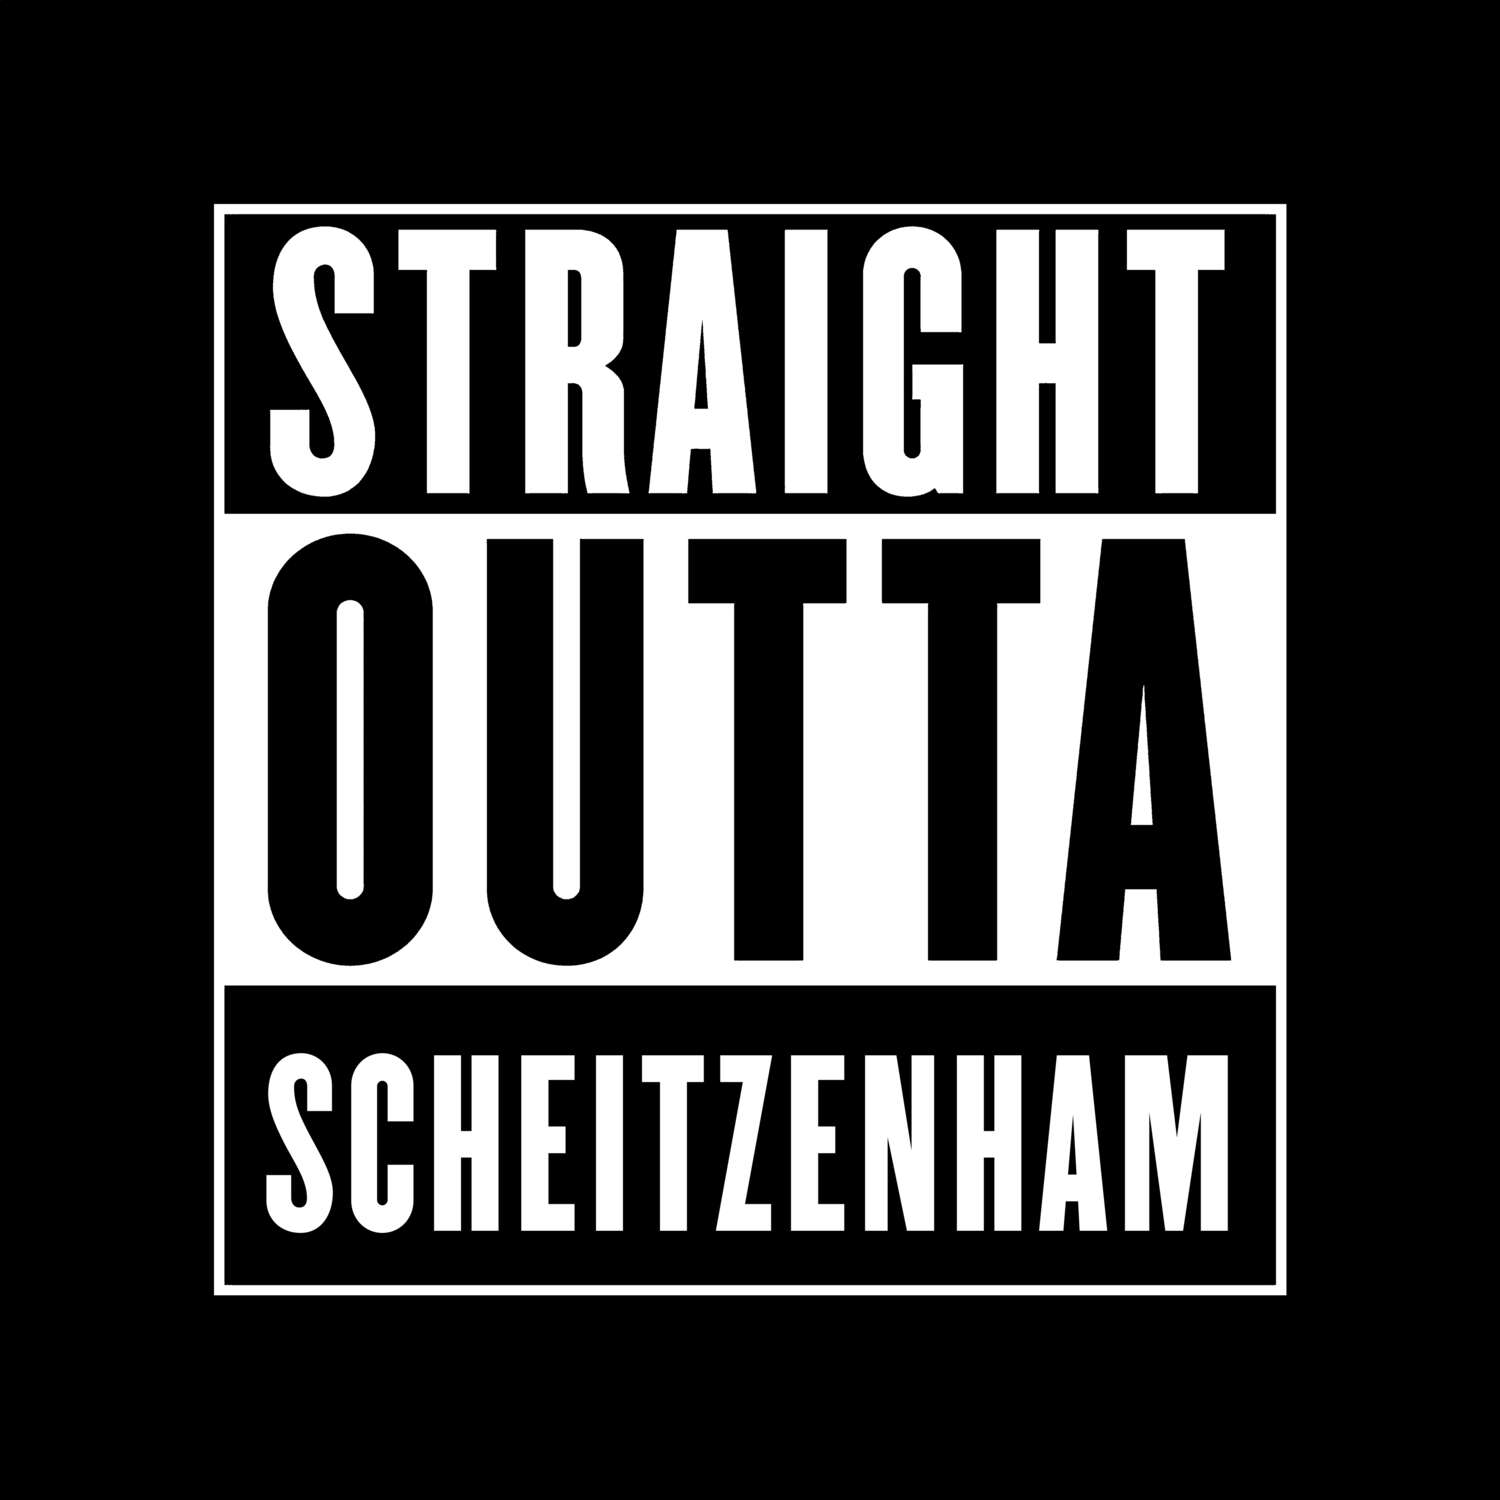 Scheitzenham T-Shirt »Straight Outta«